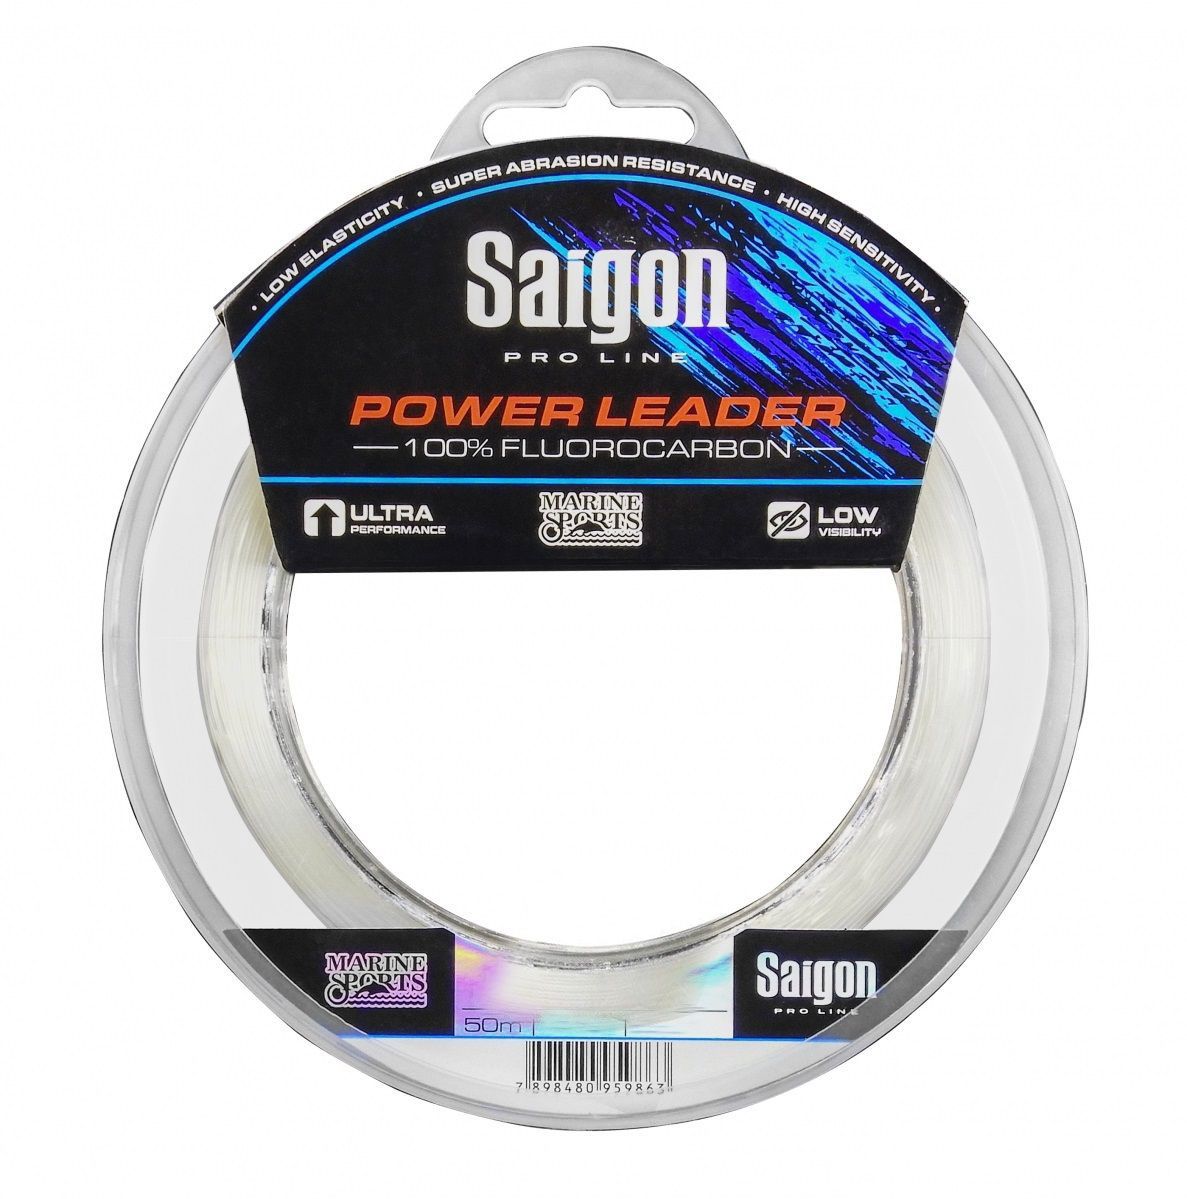 Linha Saigon Pro Line Power Leader 100% Fluorcarbon 0,49mm 29Lbs/13kg - 50 Metros  - Life Pesca - Sua loja de Pesca, Camping e Lazer